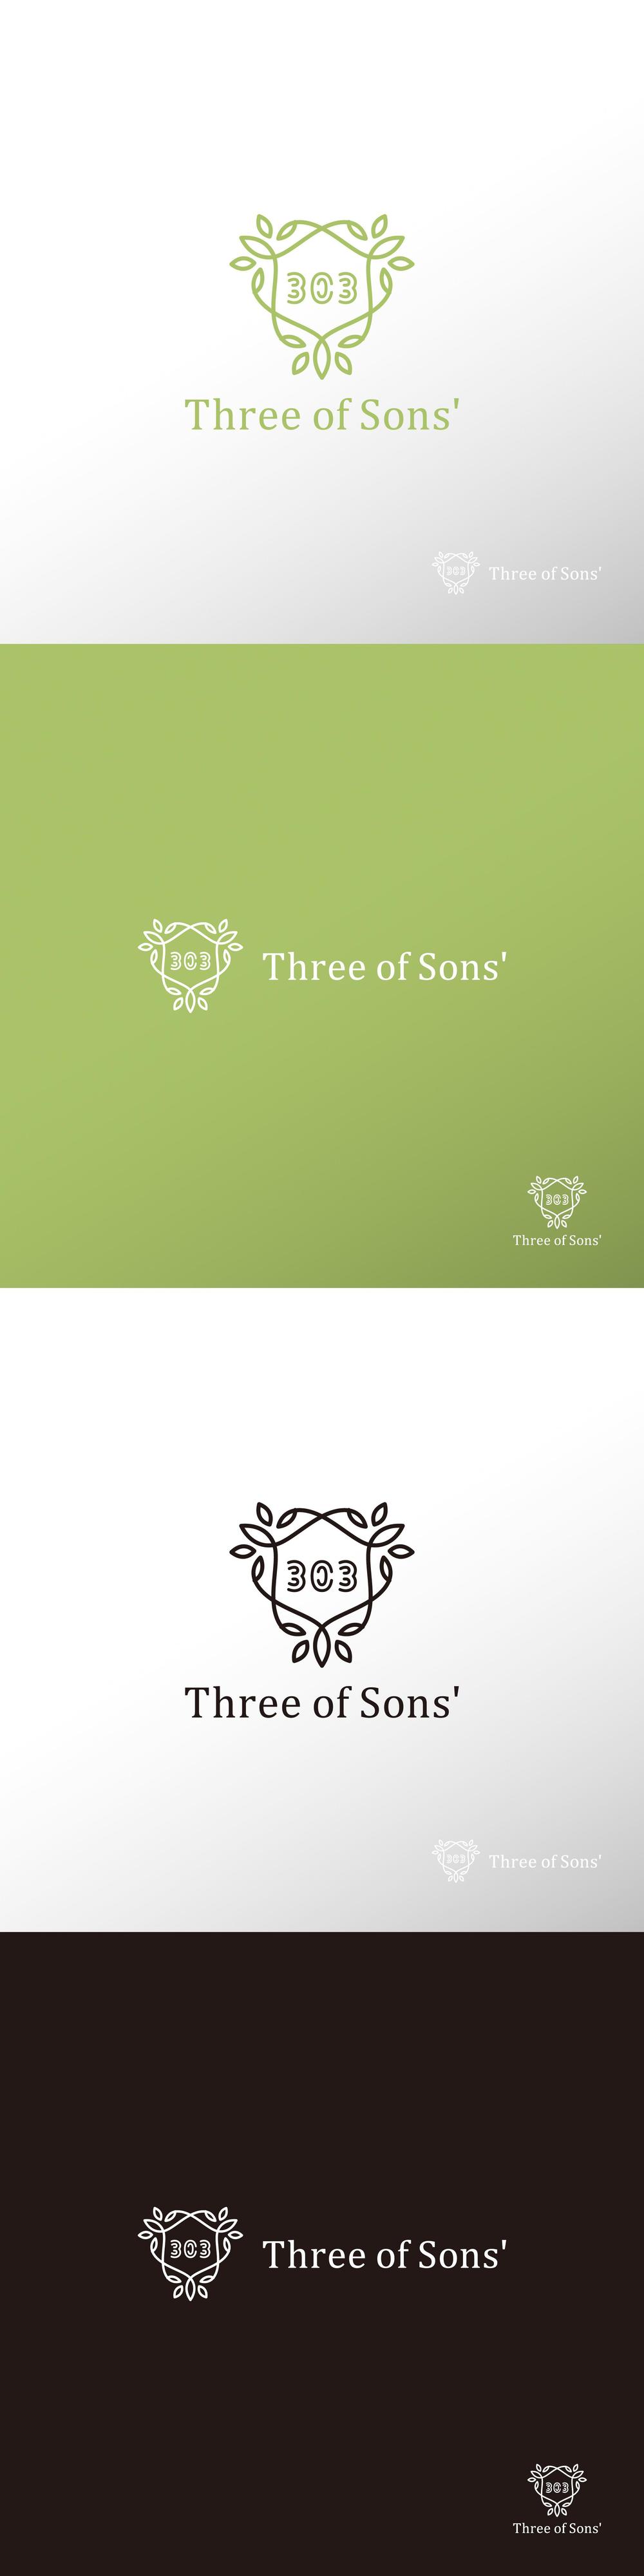 タピオカ_Three of Sons'_ロゴB1.jpg